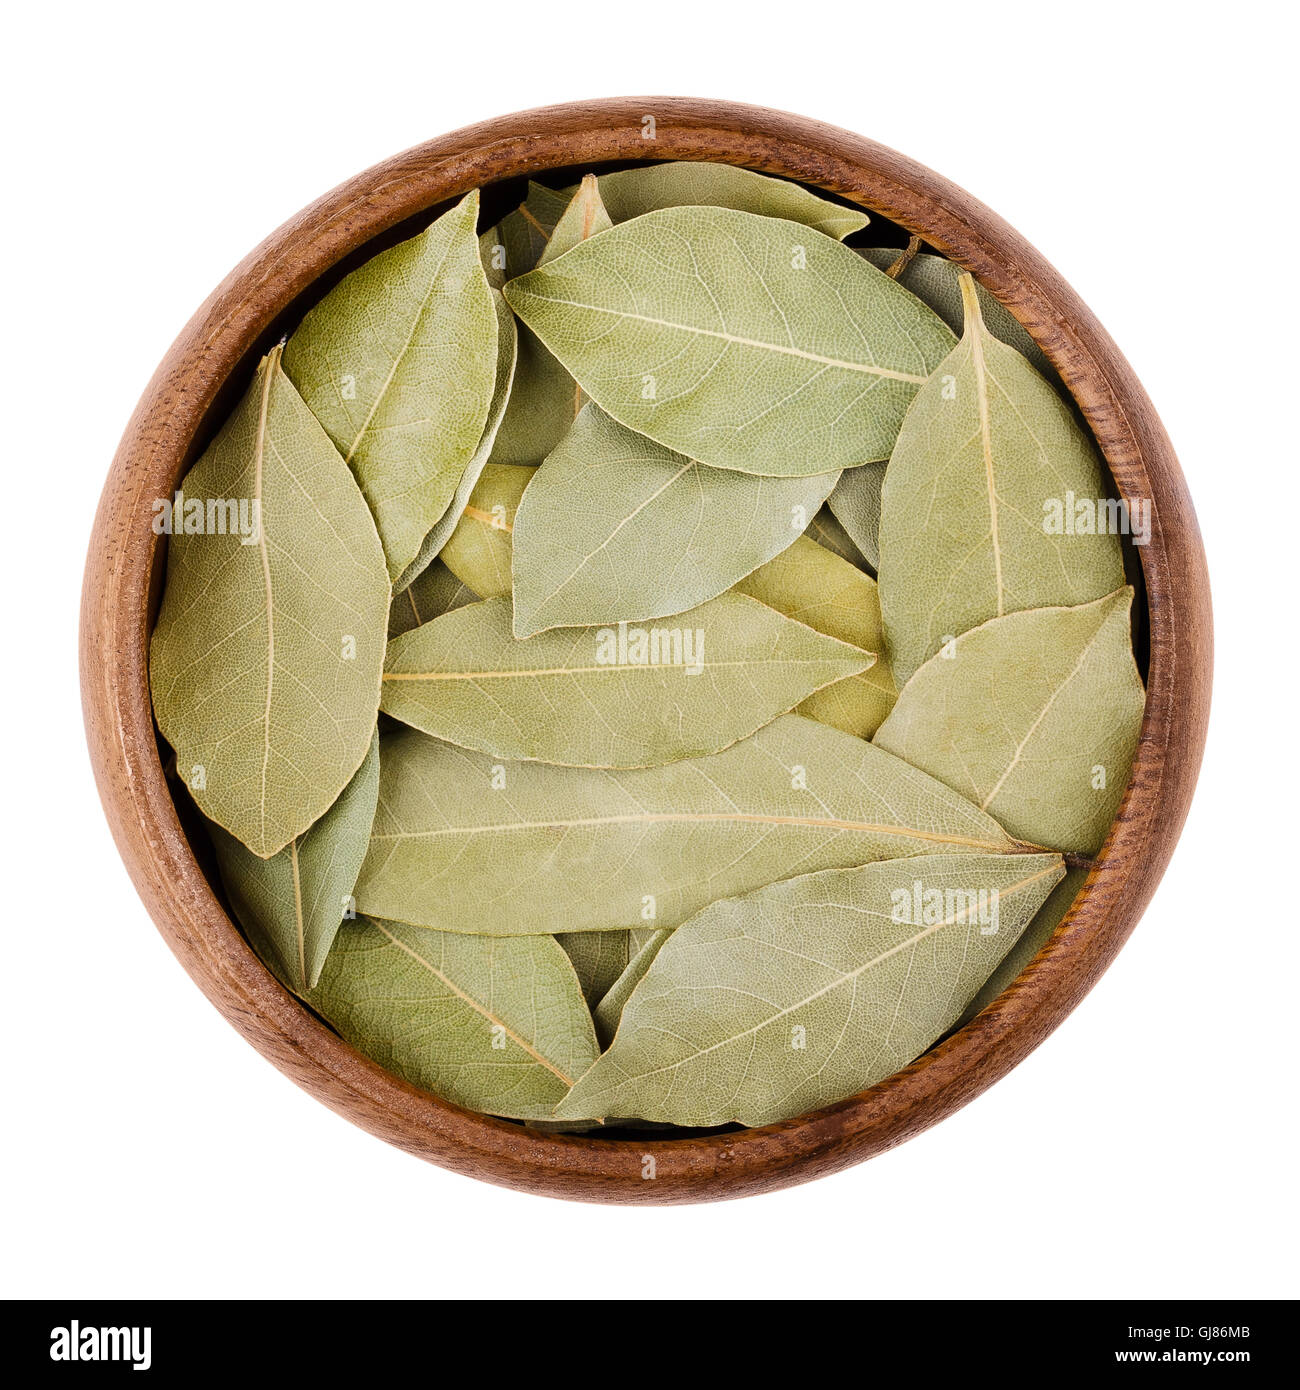 Essiccata foglie di alloro in una ciotola su bianco. Foglie aromatiche di Laurus nobilis, chiamato anche le foglie di alloro, utilizzati per la stagionatura in cottura. Foto Stock